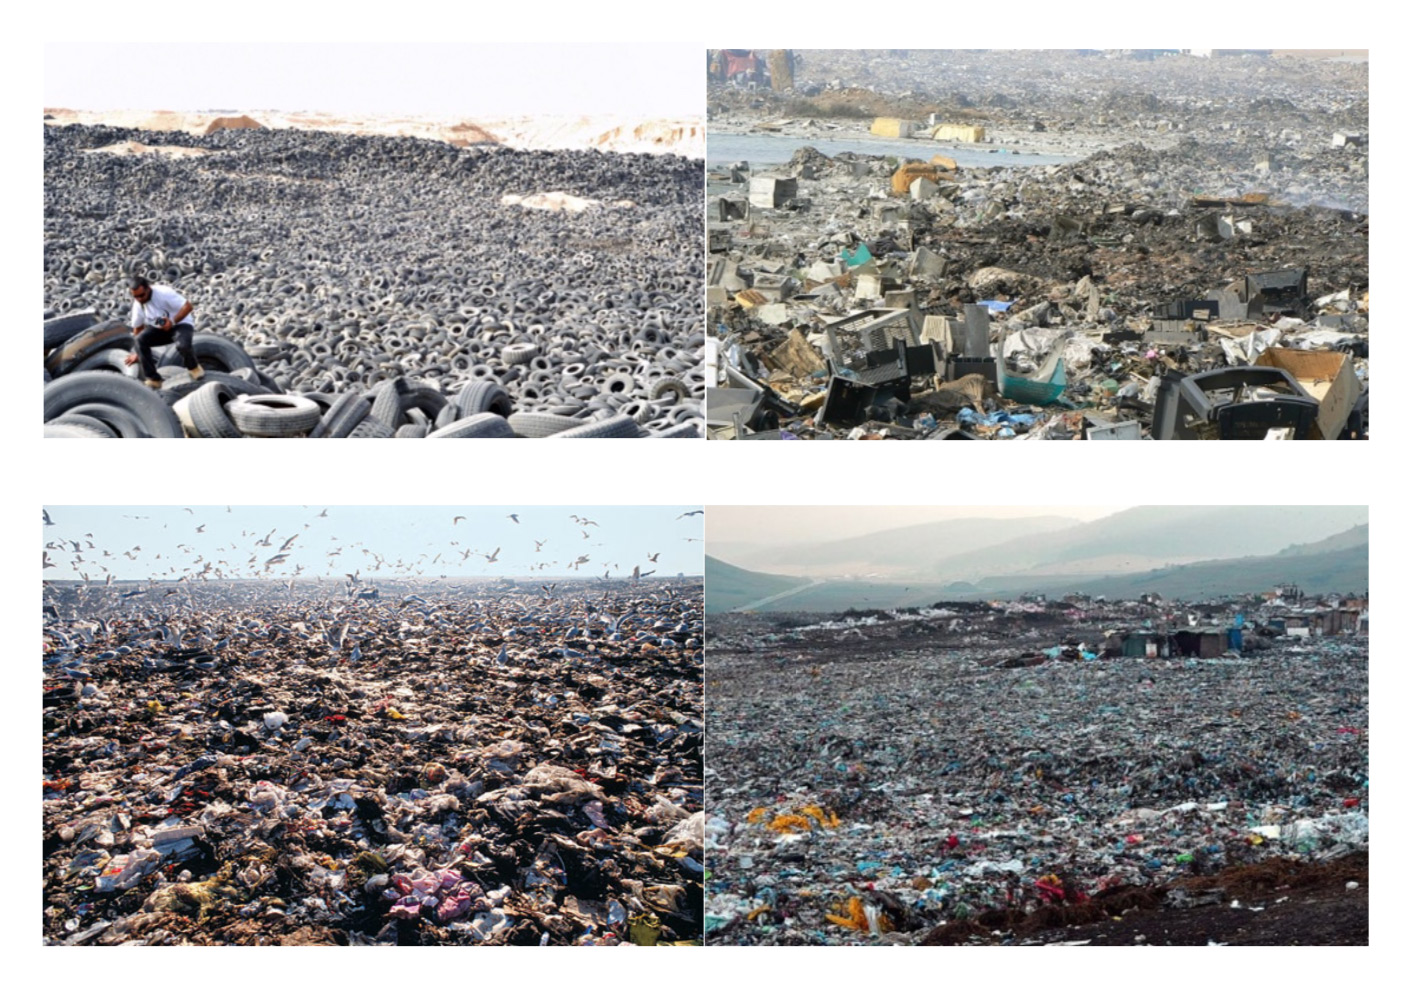 Global waste piles